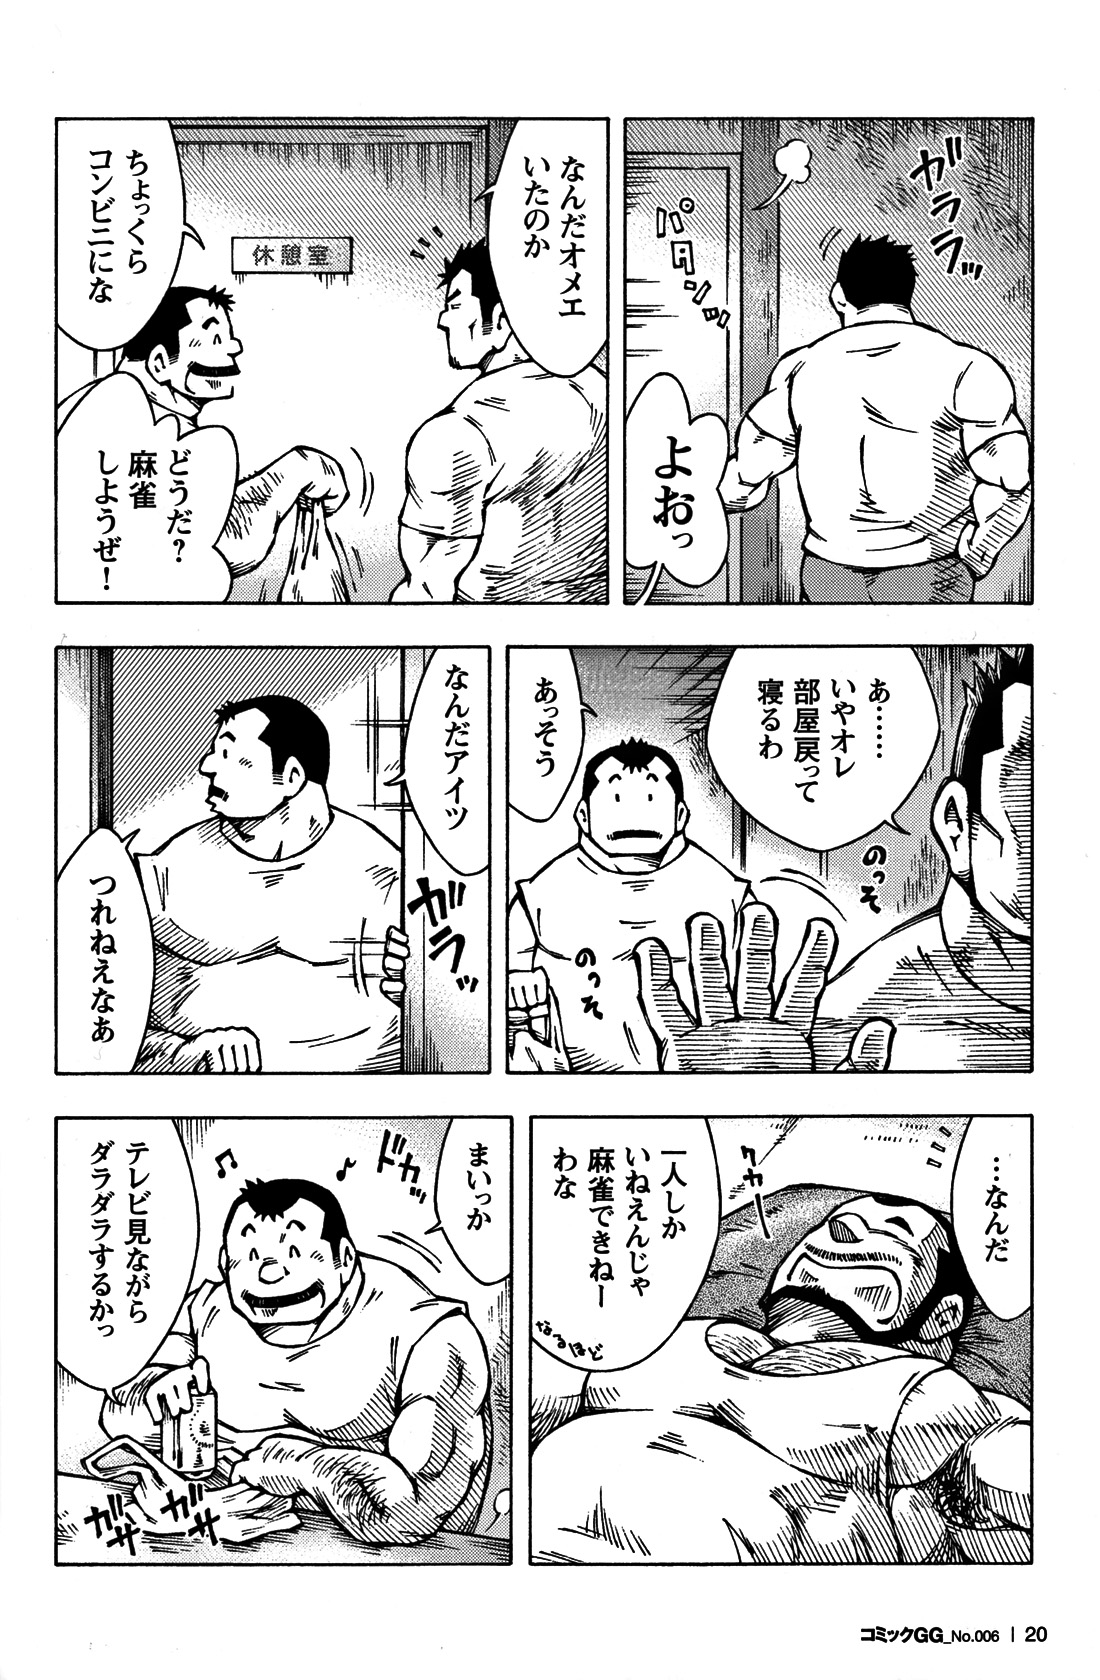 Comic G-men Gaho No. 06 Nikutai Roudousha page 19 full